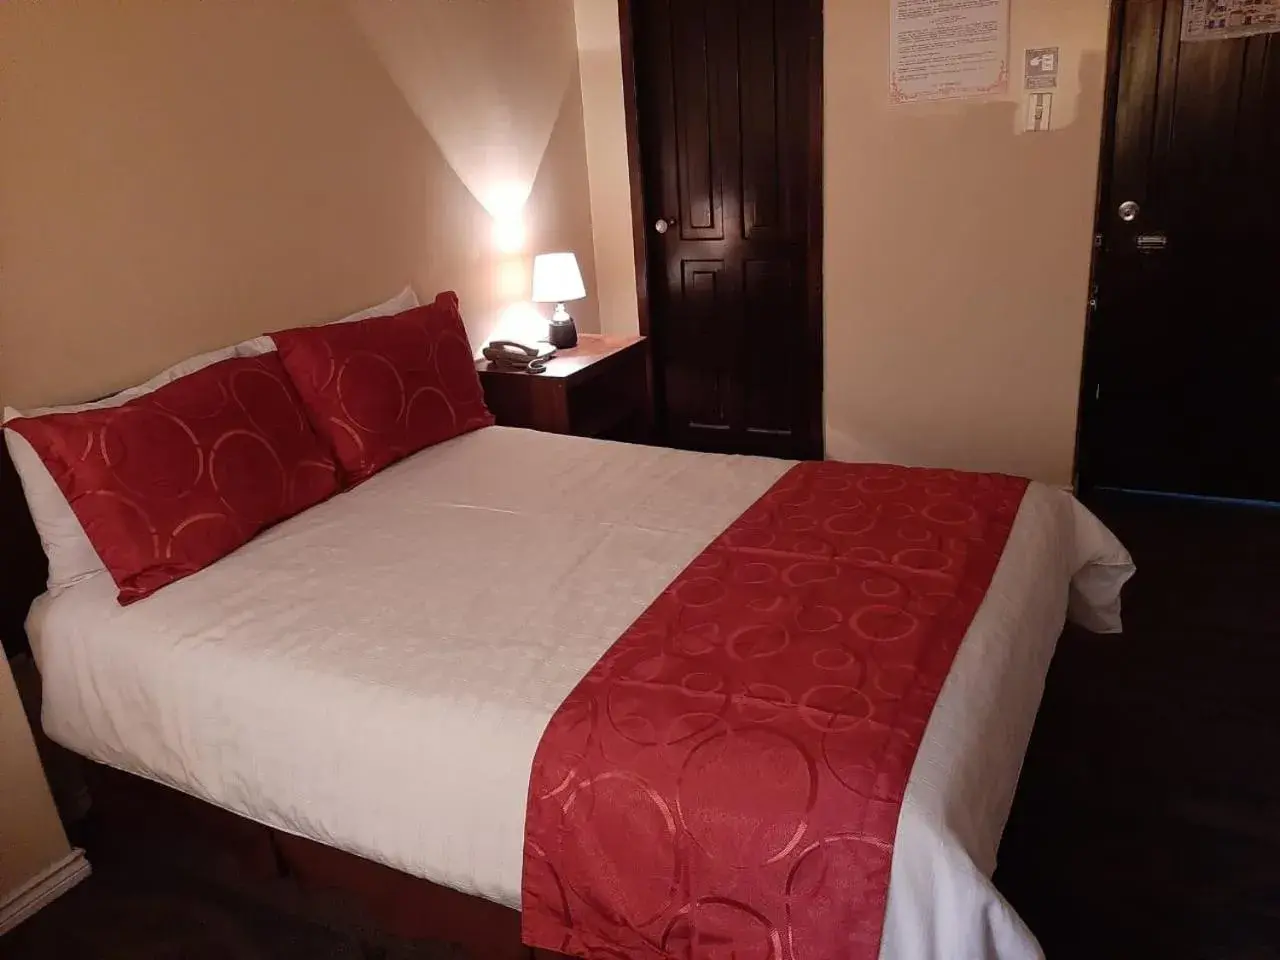 Bed in Hotel Bonaventure